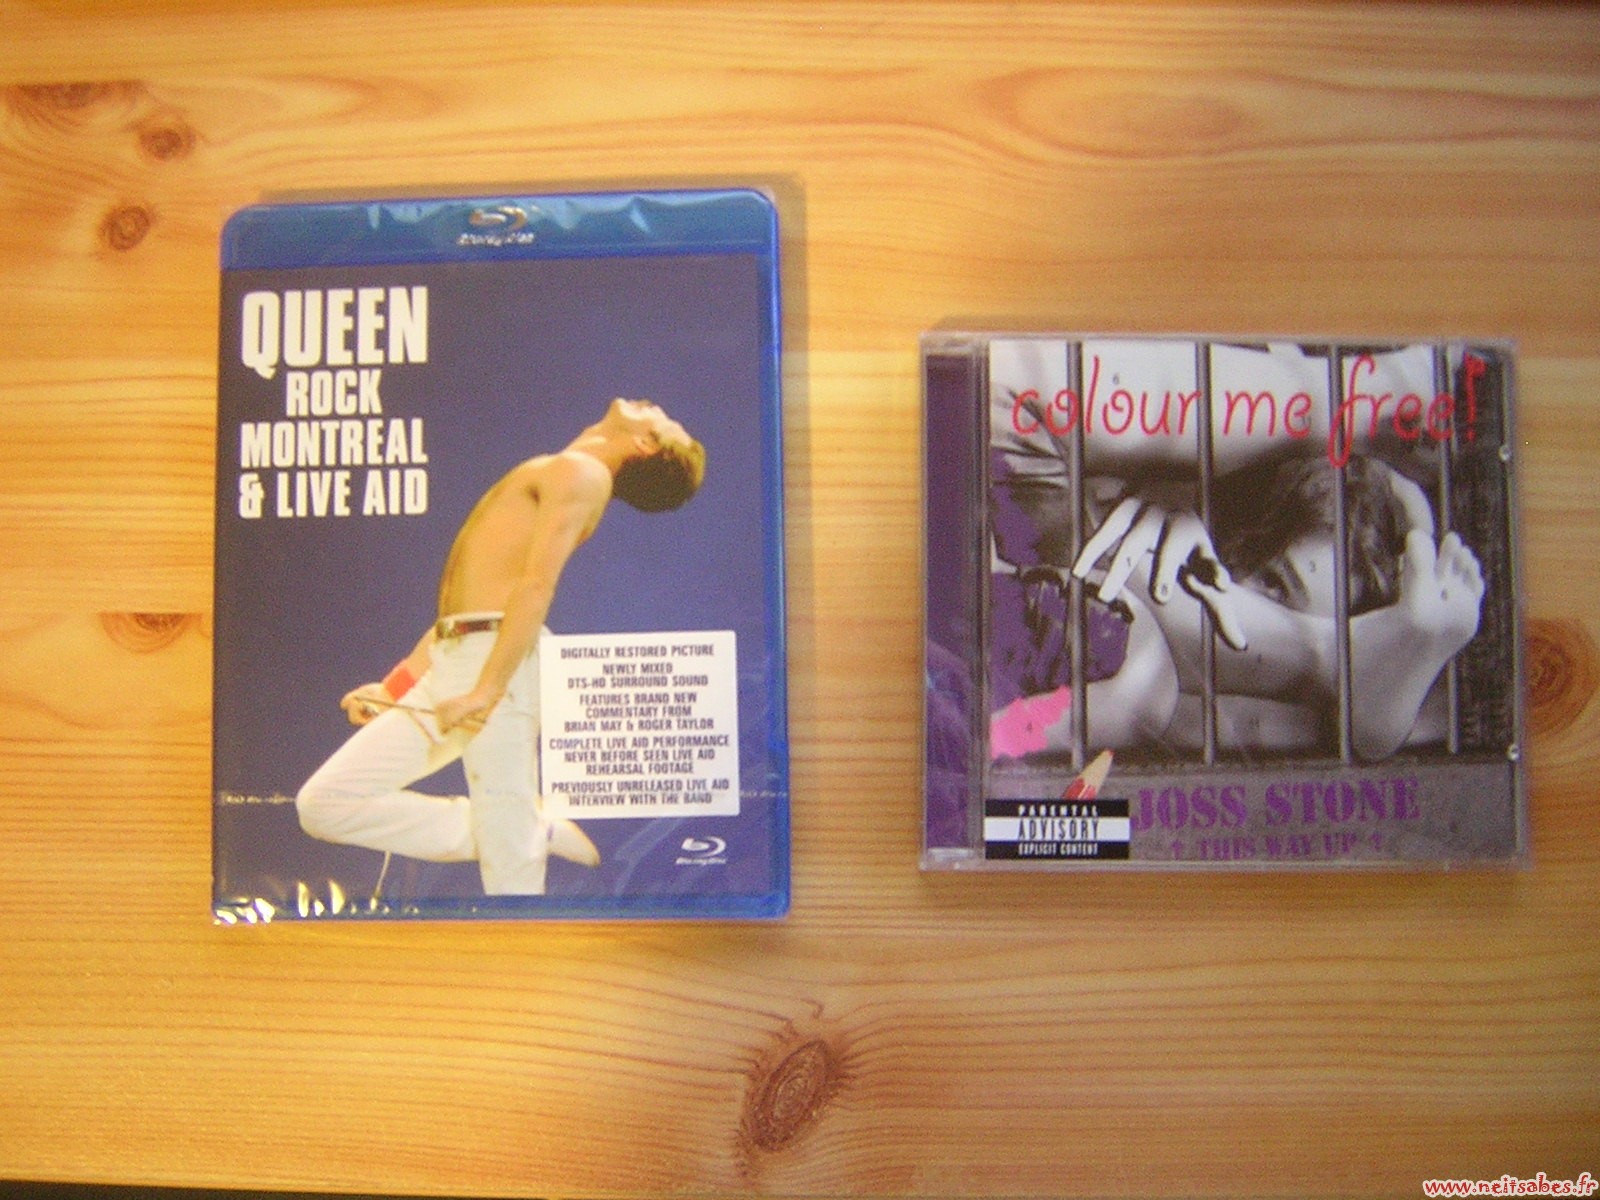 C'est arrivé ! - Blu-Ray de Queen et CD de Joss Stone